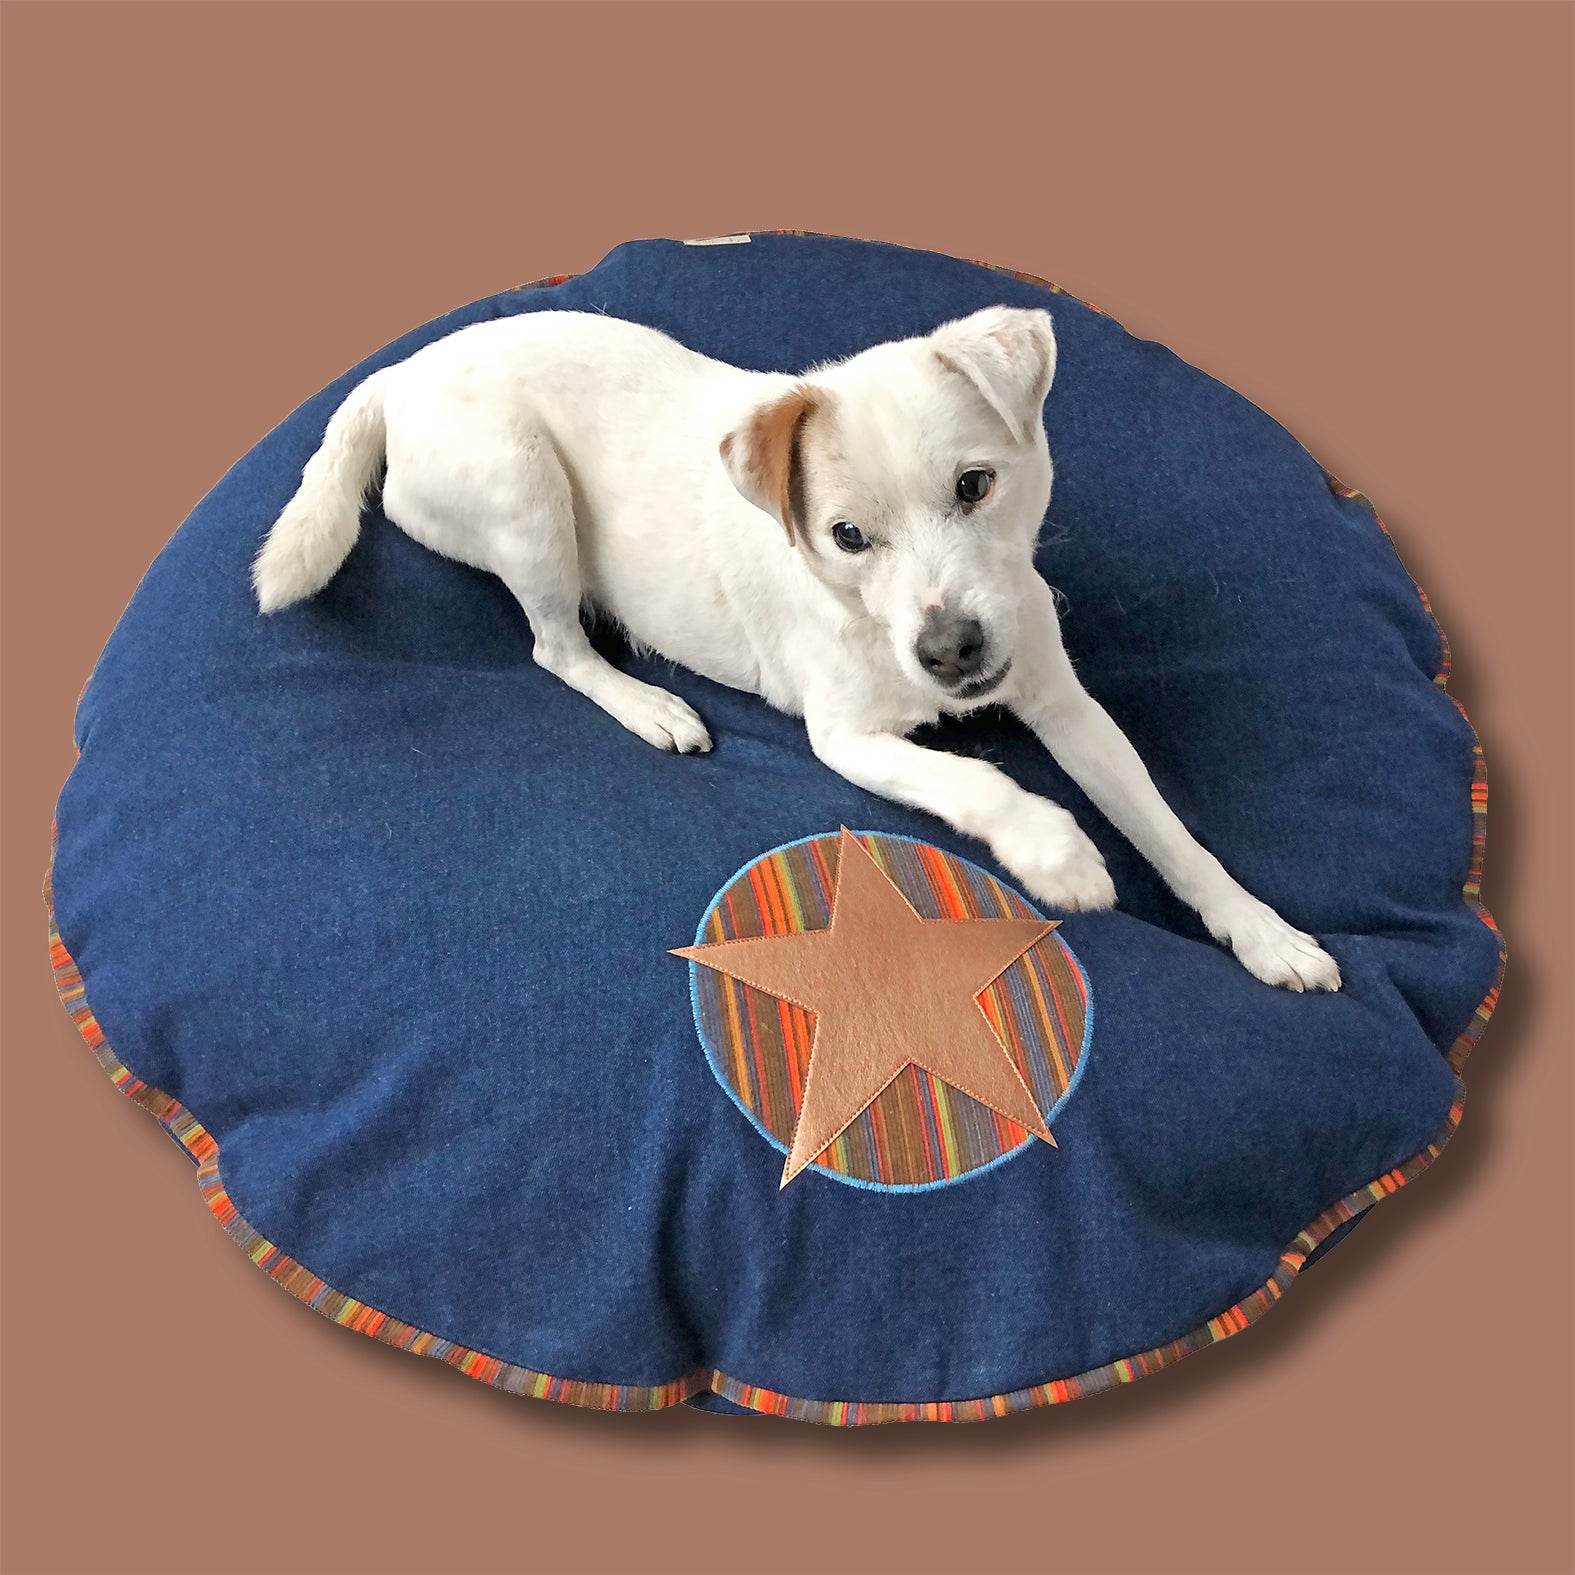 Hundebett rund aus Jeansstoff Dunkelblau mit Stern aus veganem Leder in Kupfer und Cord für kleine bis mittelgroße Hunde wie Terrier